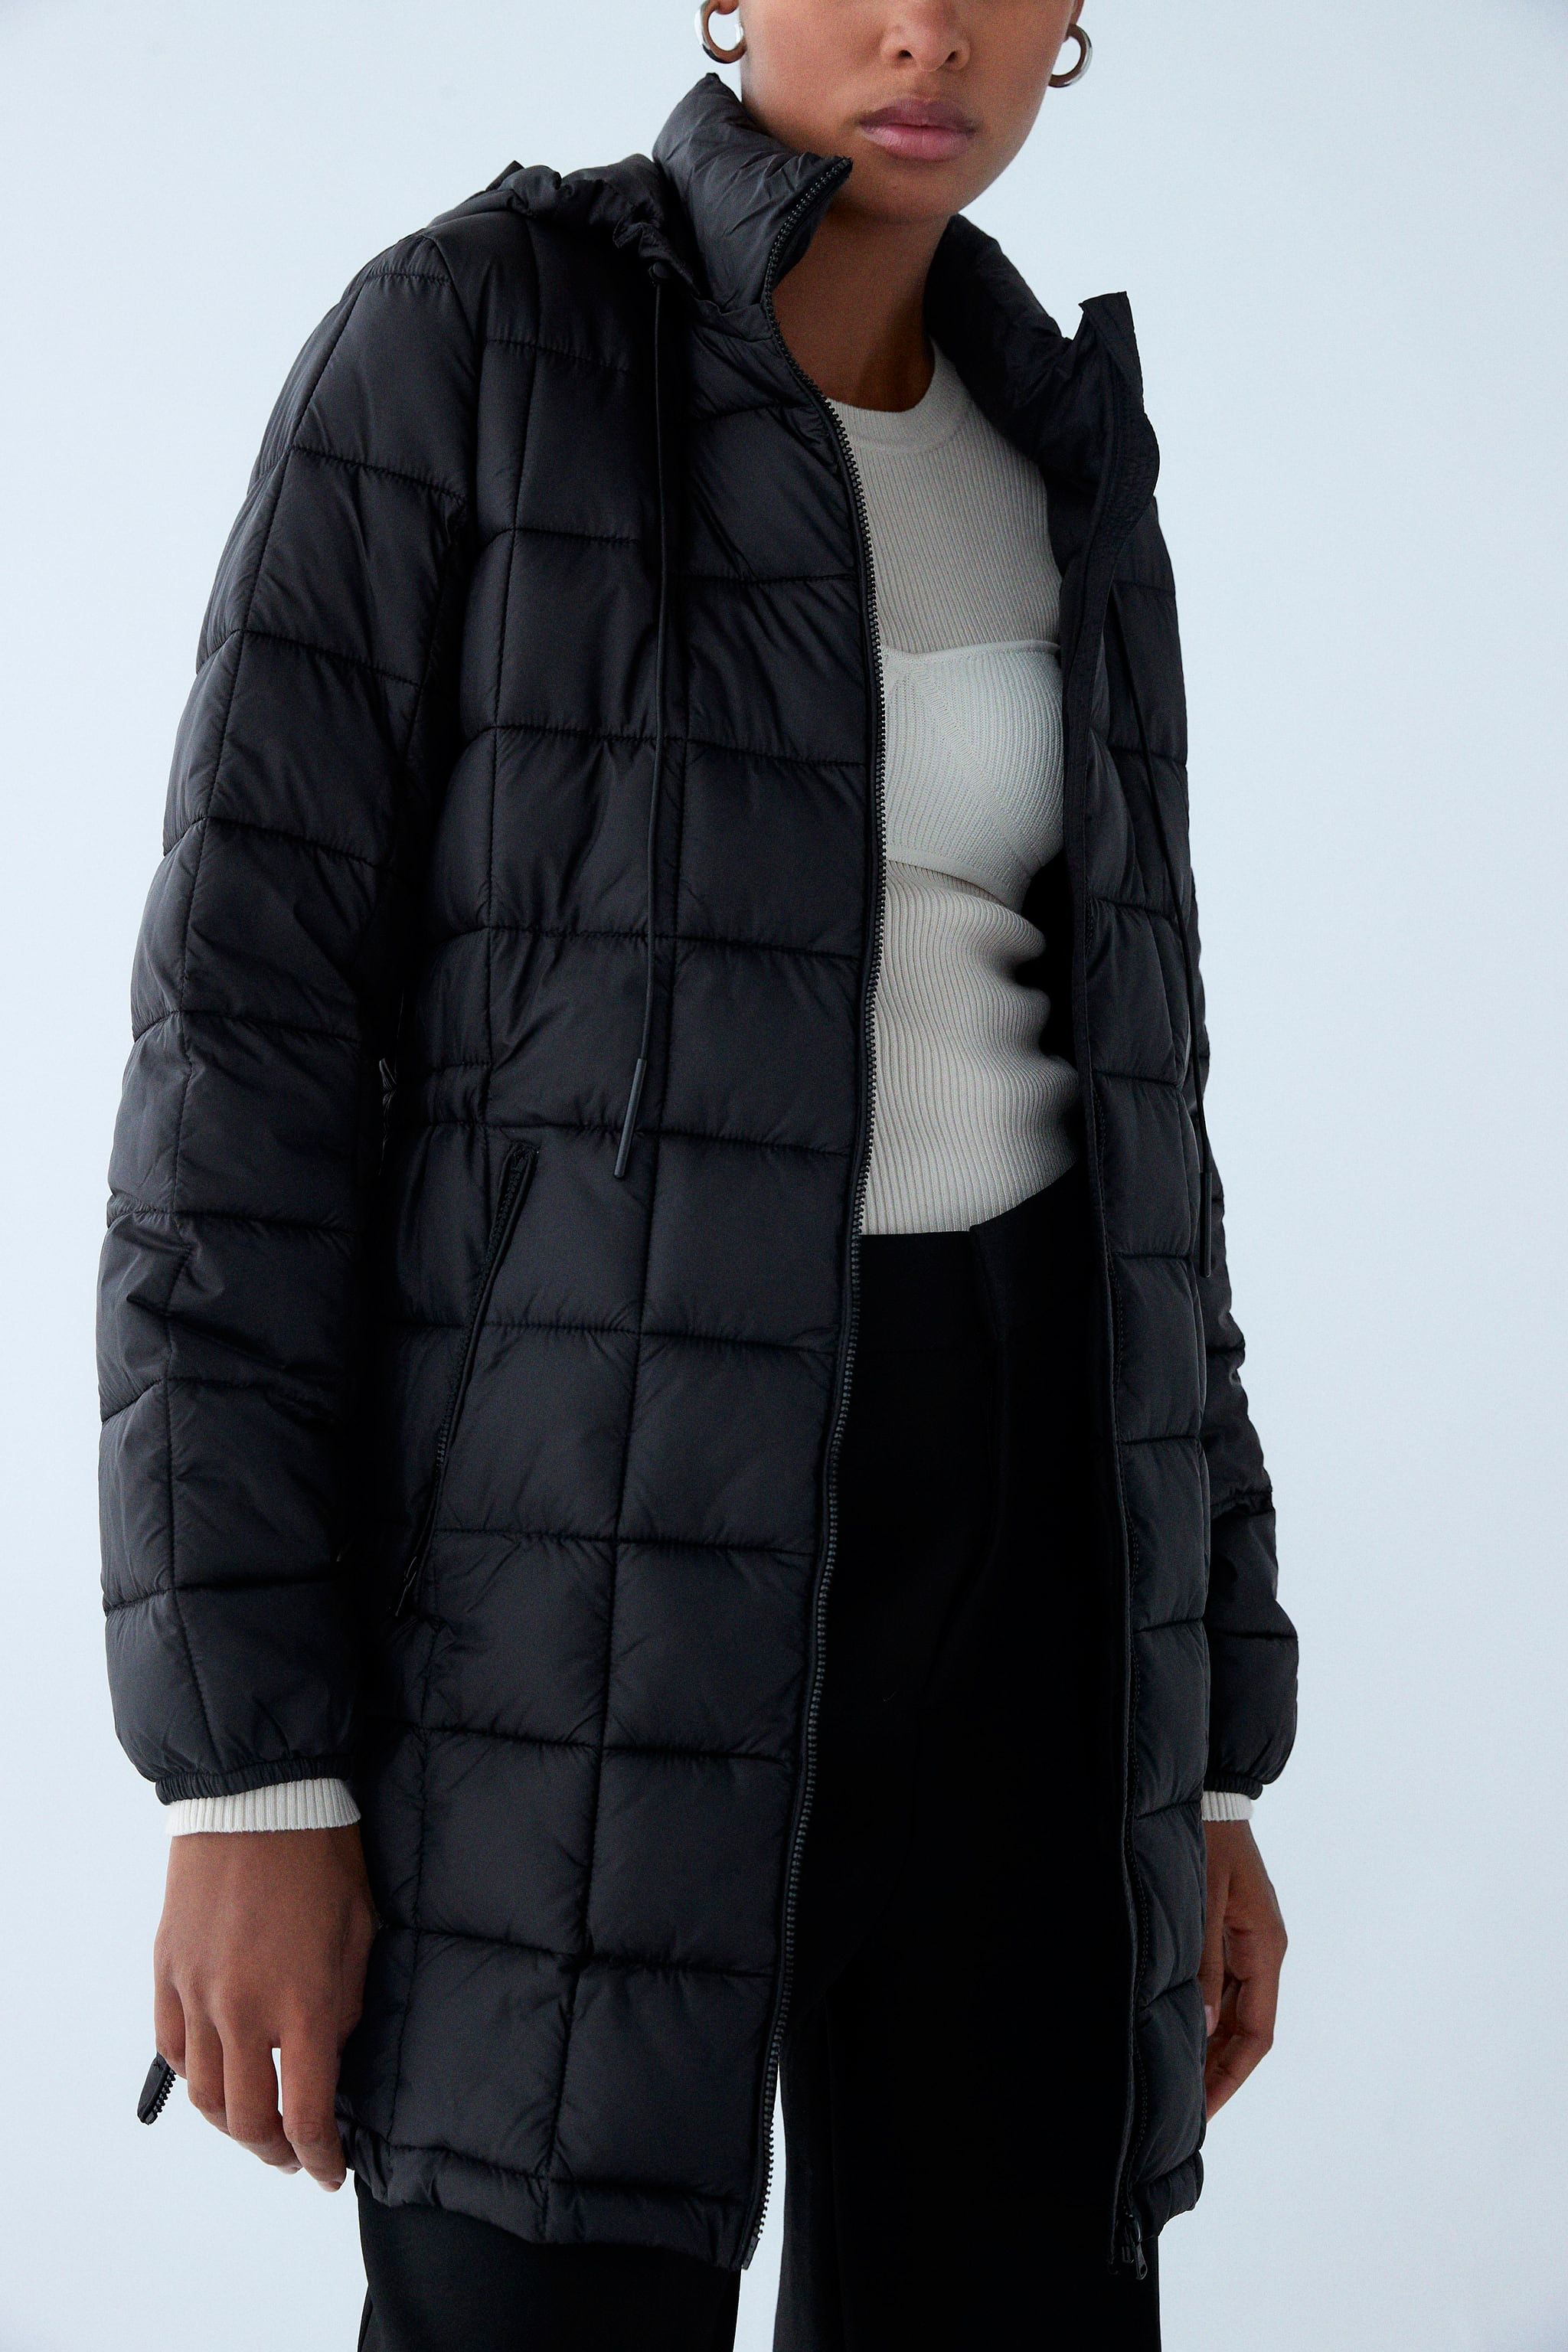 académico matiz bienestar El abrigo plumífero negro sostenible de Zara que arrasa en ventas